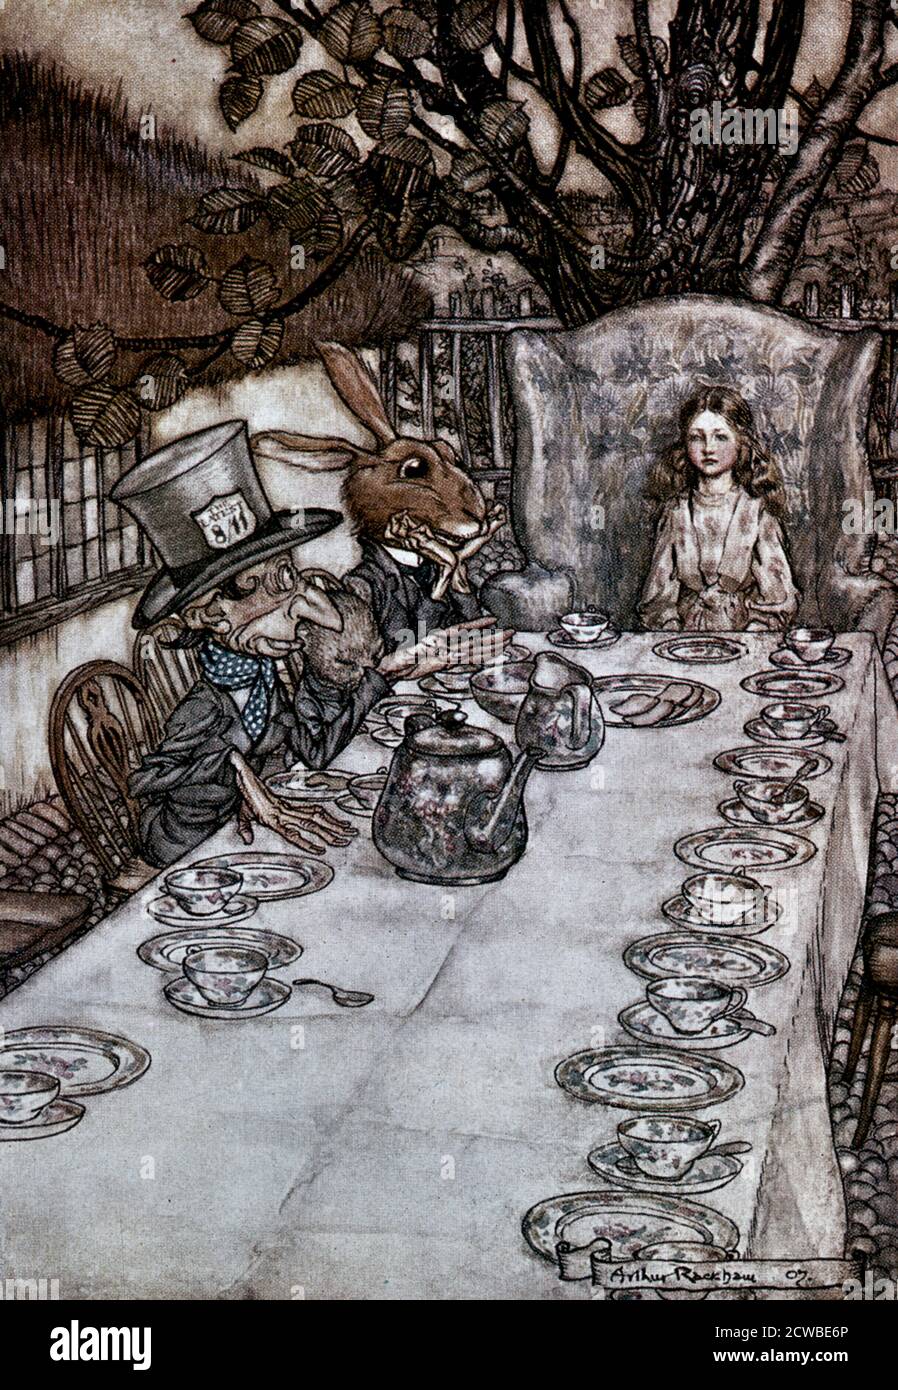 Alice in Wonderland', 1917 Artist: Arthur Rackham. Alice's Adventures in Wonderland is a work of children's literature by the British mathematician, Lewis Carroll. Stock Photo